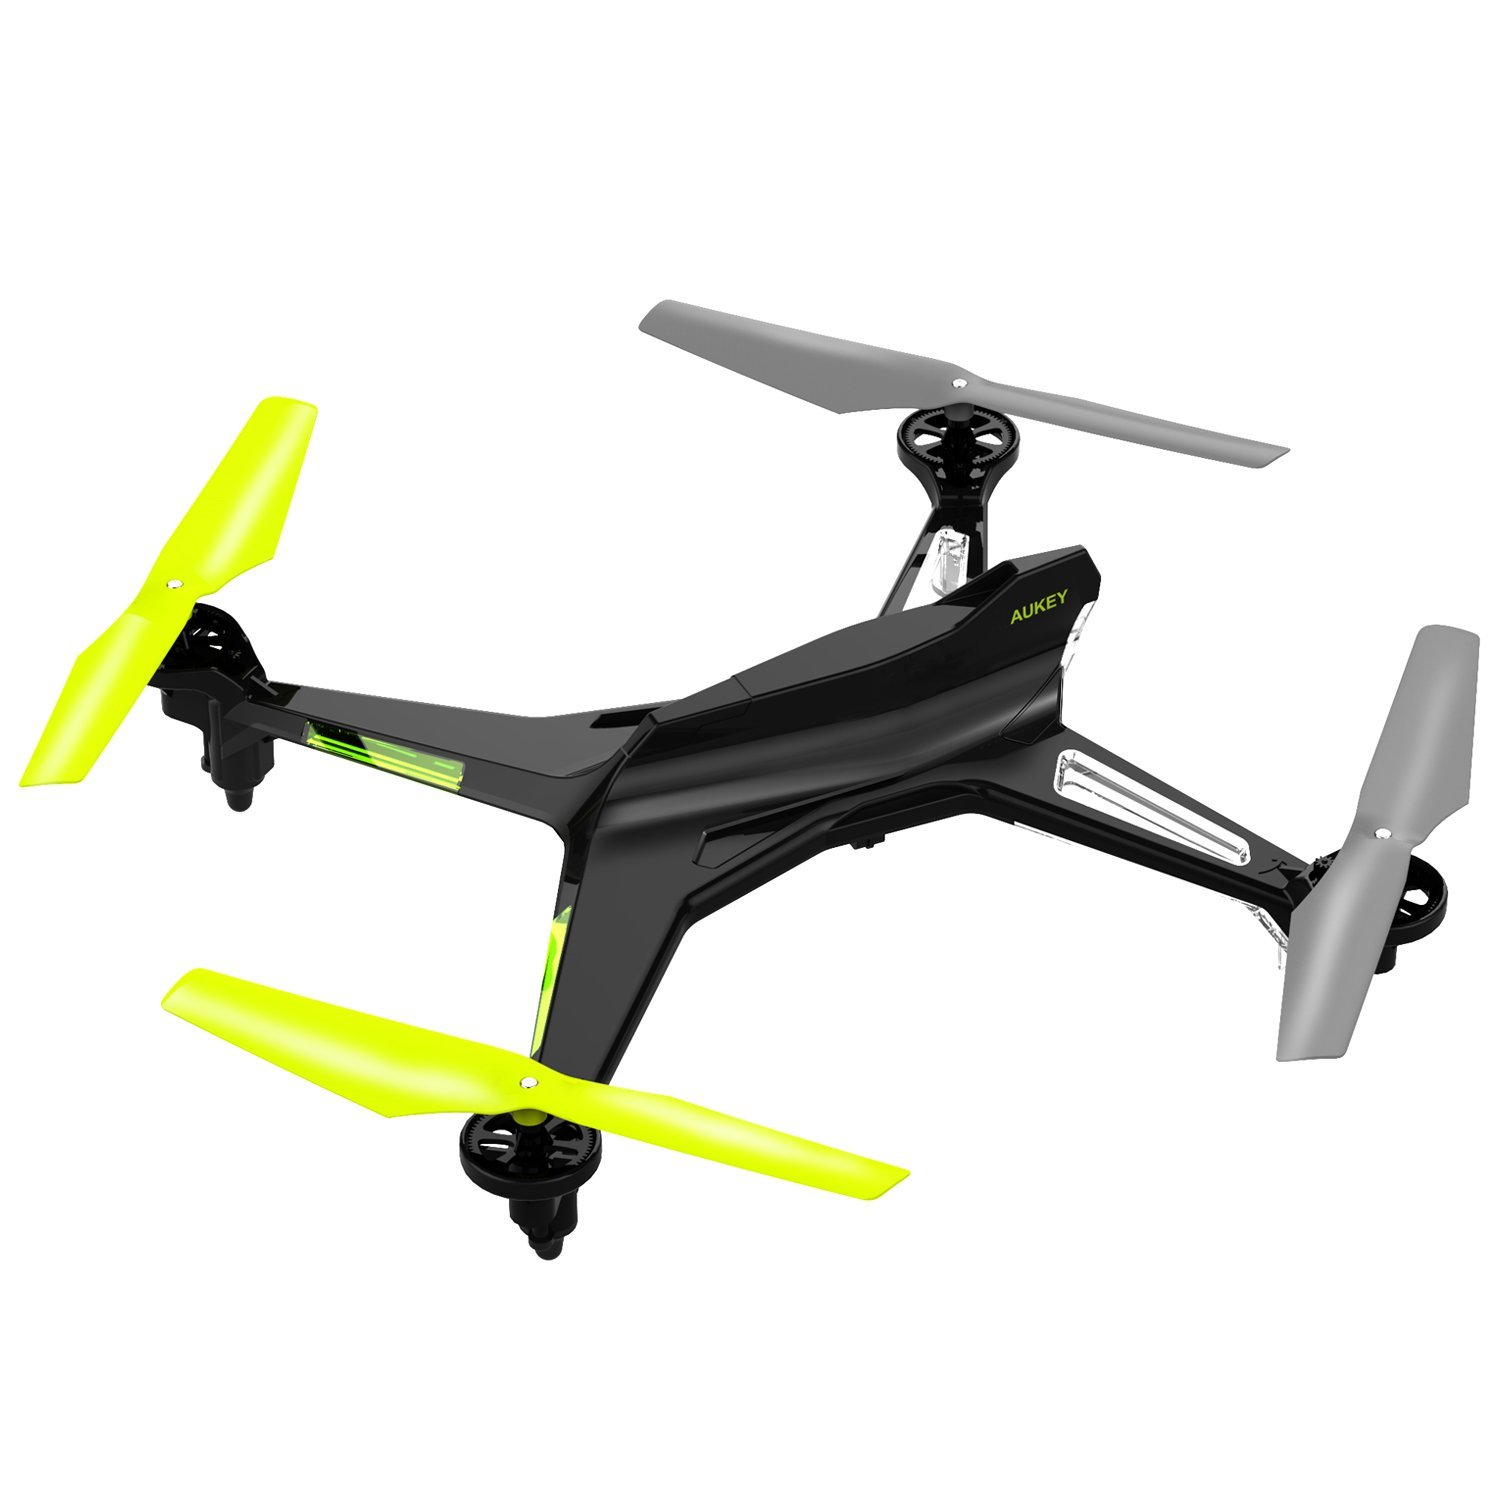 AUKEY Mohawk Drohne Test Spielzeug-Quadrocopter